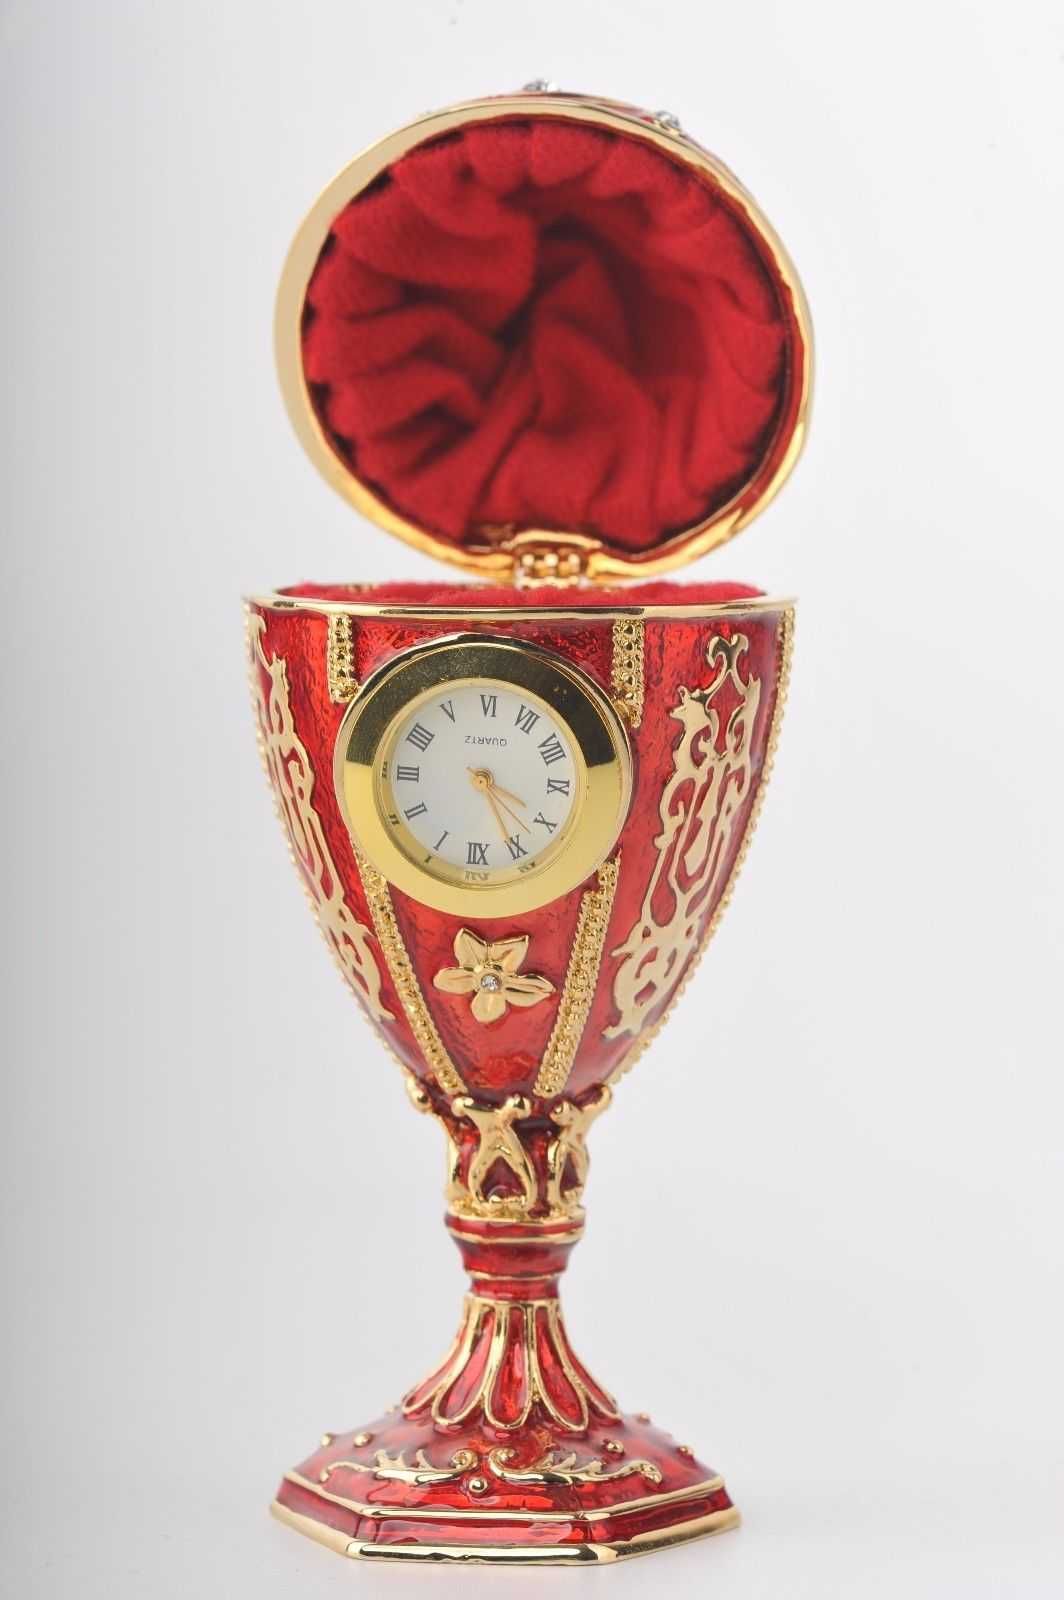 Czerwone jajko puzdreko pisanka zegarek Katalog Keren Kopal Faberge